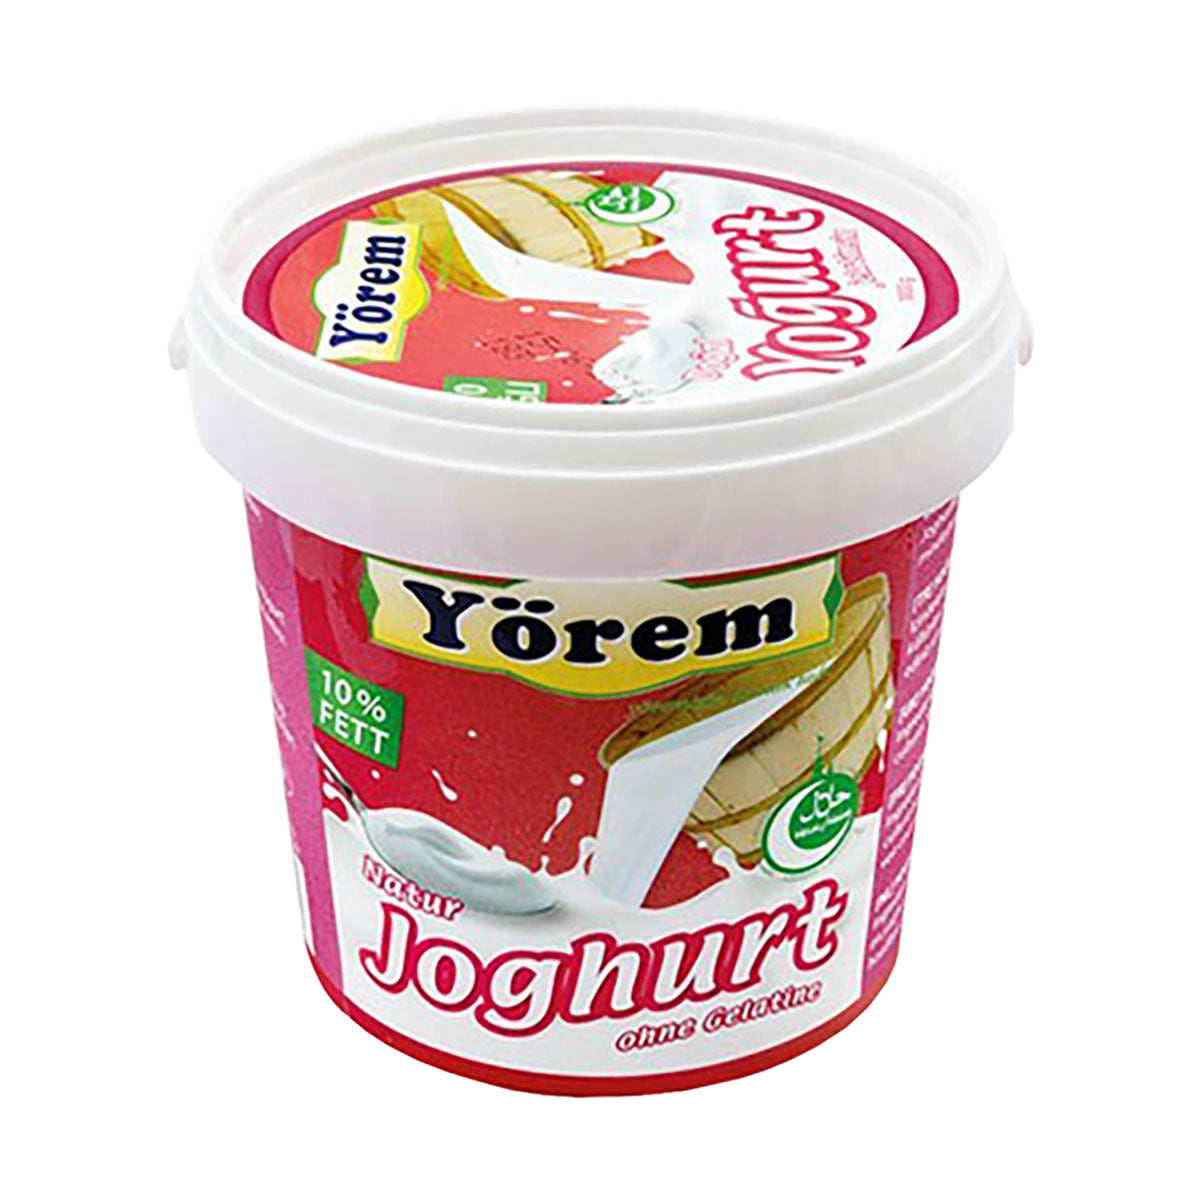 Yogurt Naturale - 5 kg - Yorem